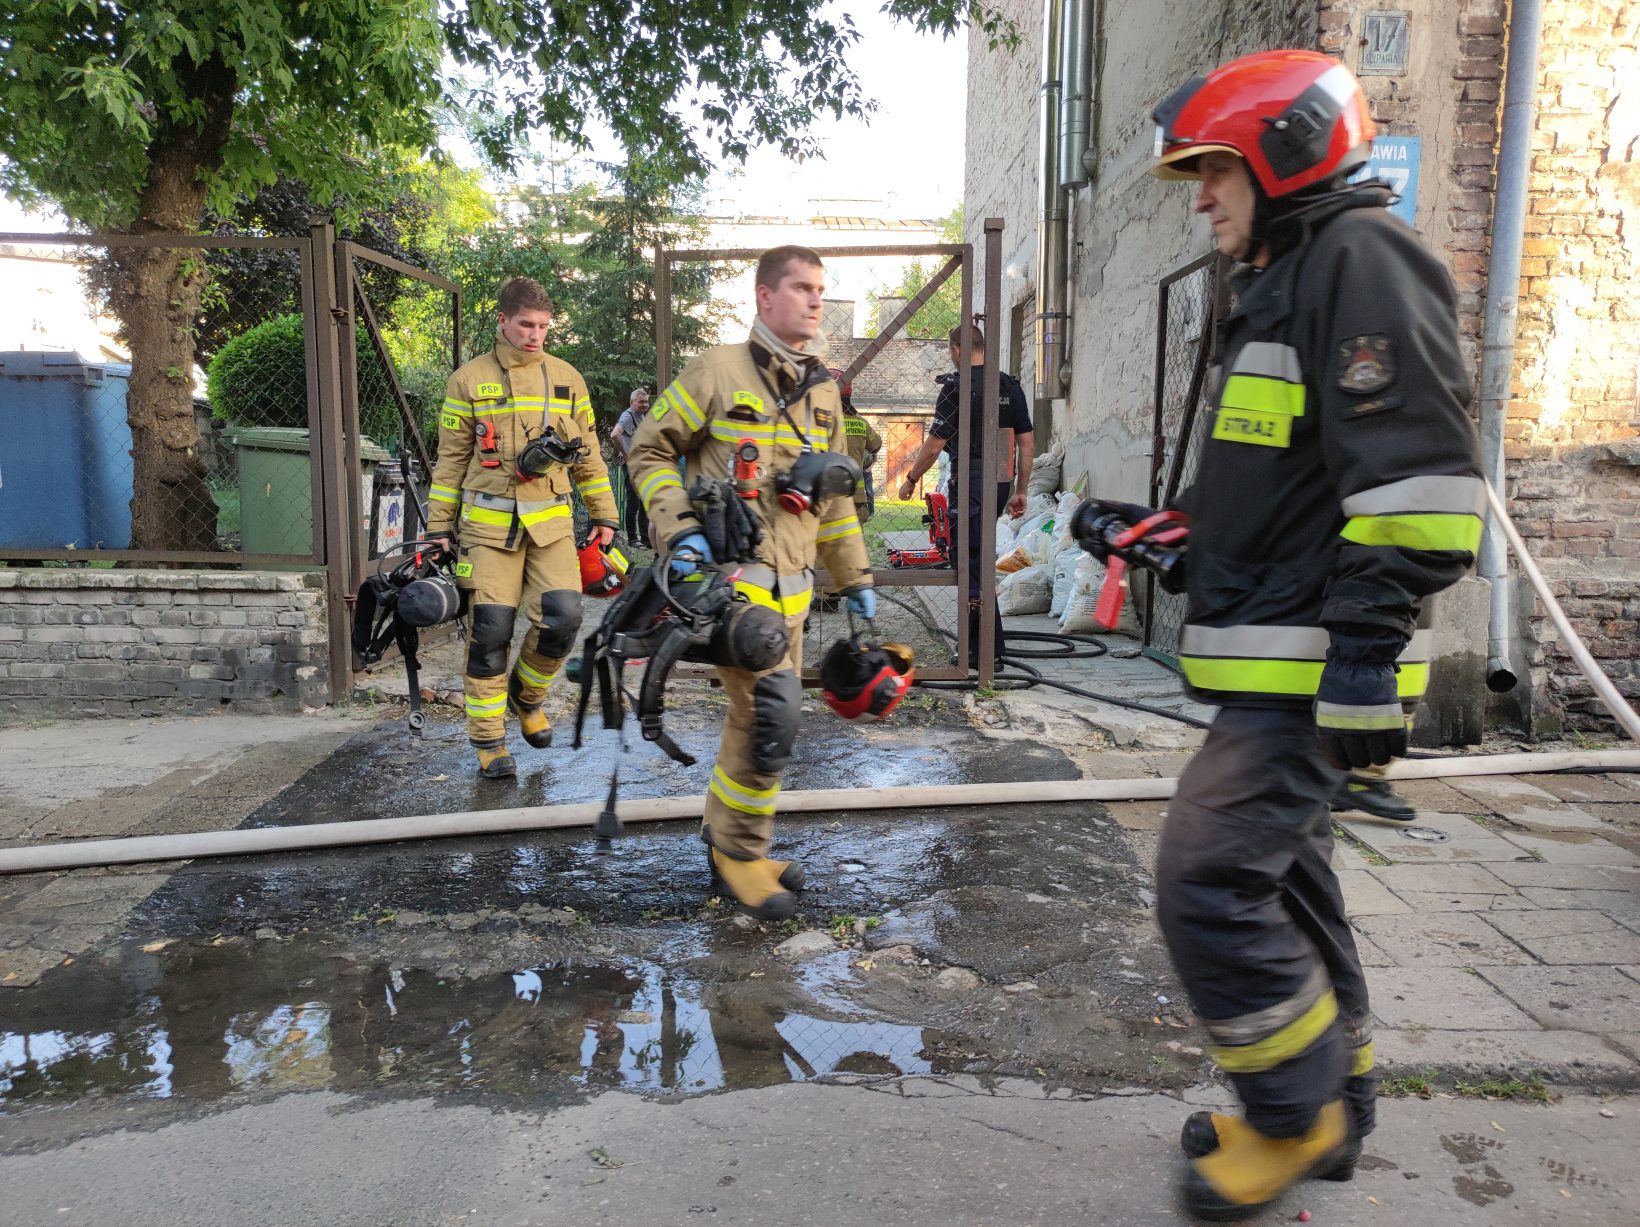 Ze środka wydobywały się kłęby dymu. Kolejny pożar mieszkania w Lublinie (zdjęcia)